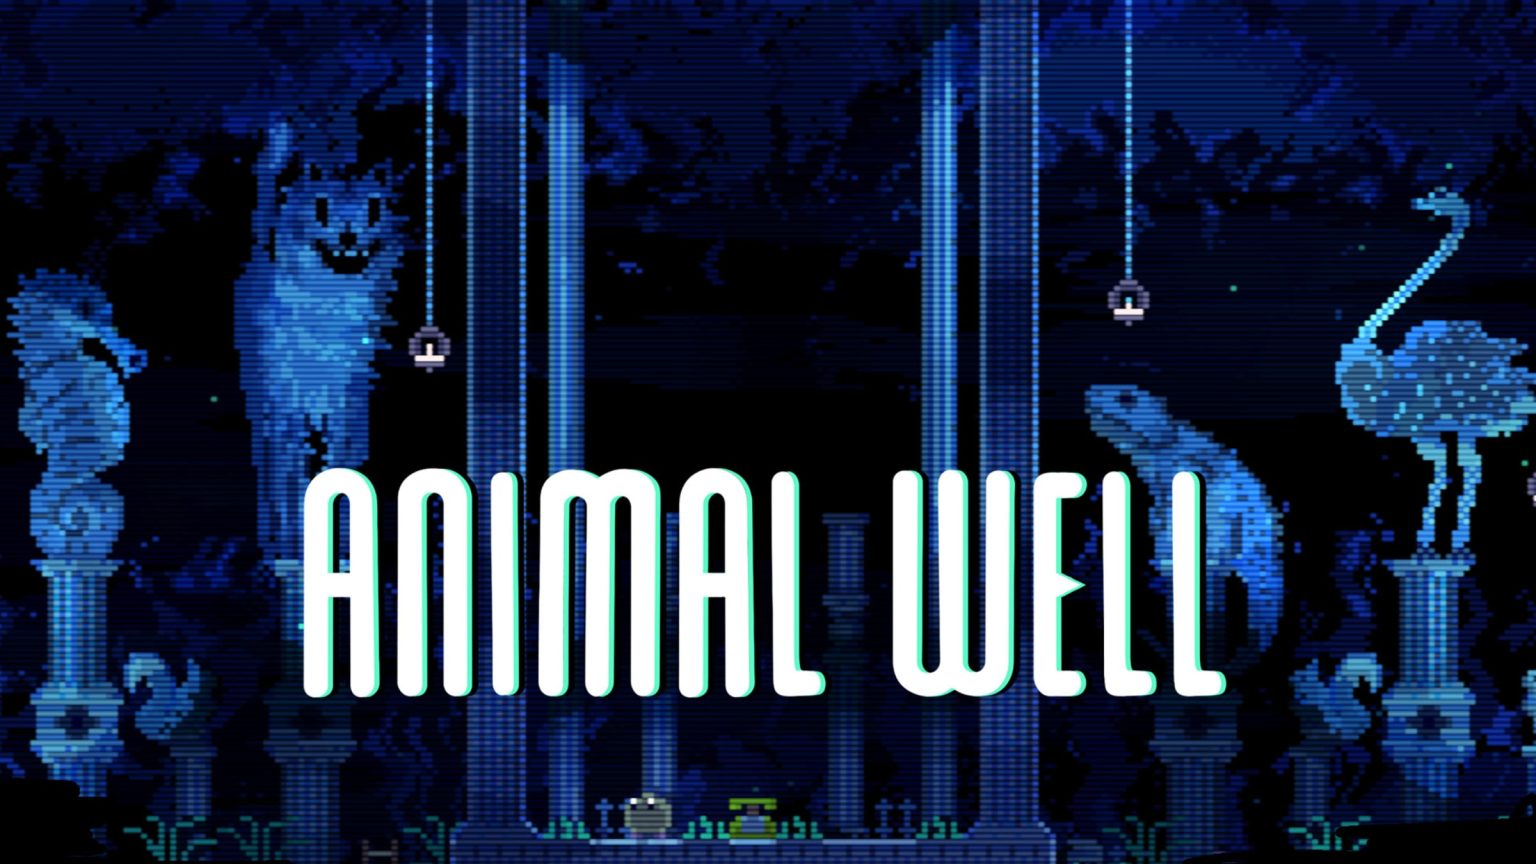 Animal Well af Billy Basso studio er blevet udgivet